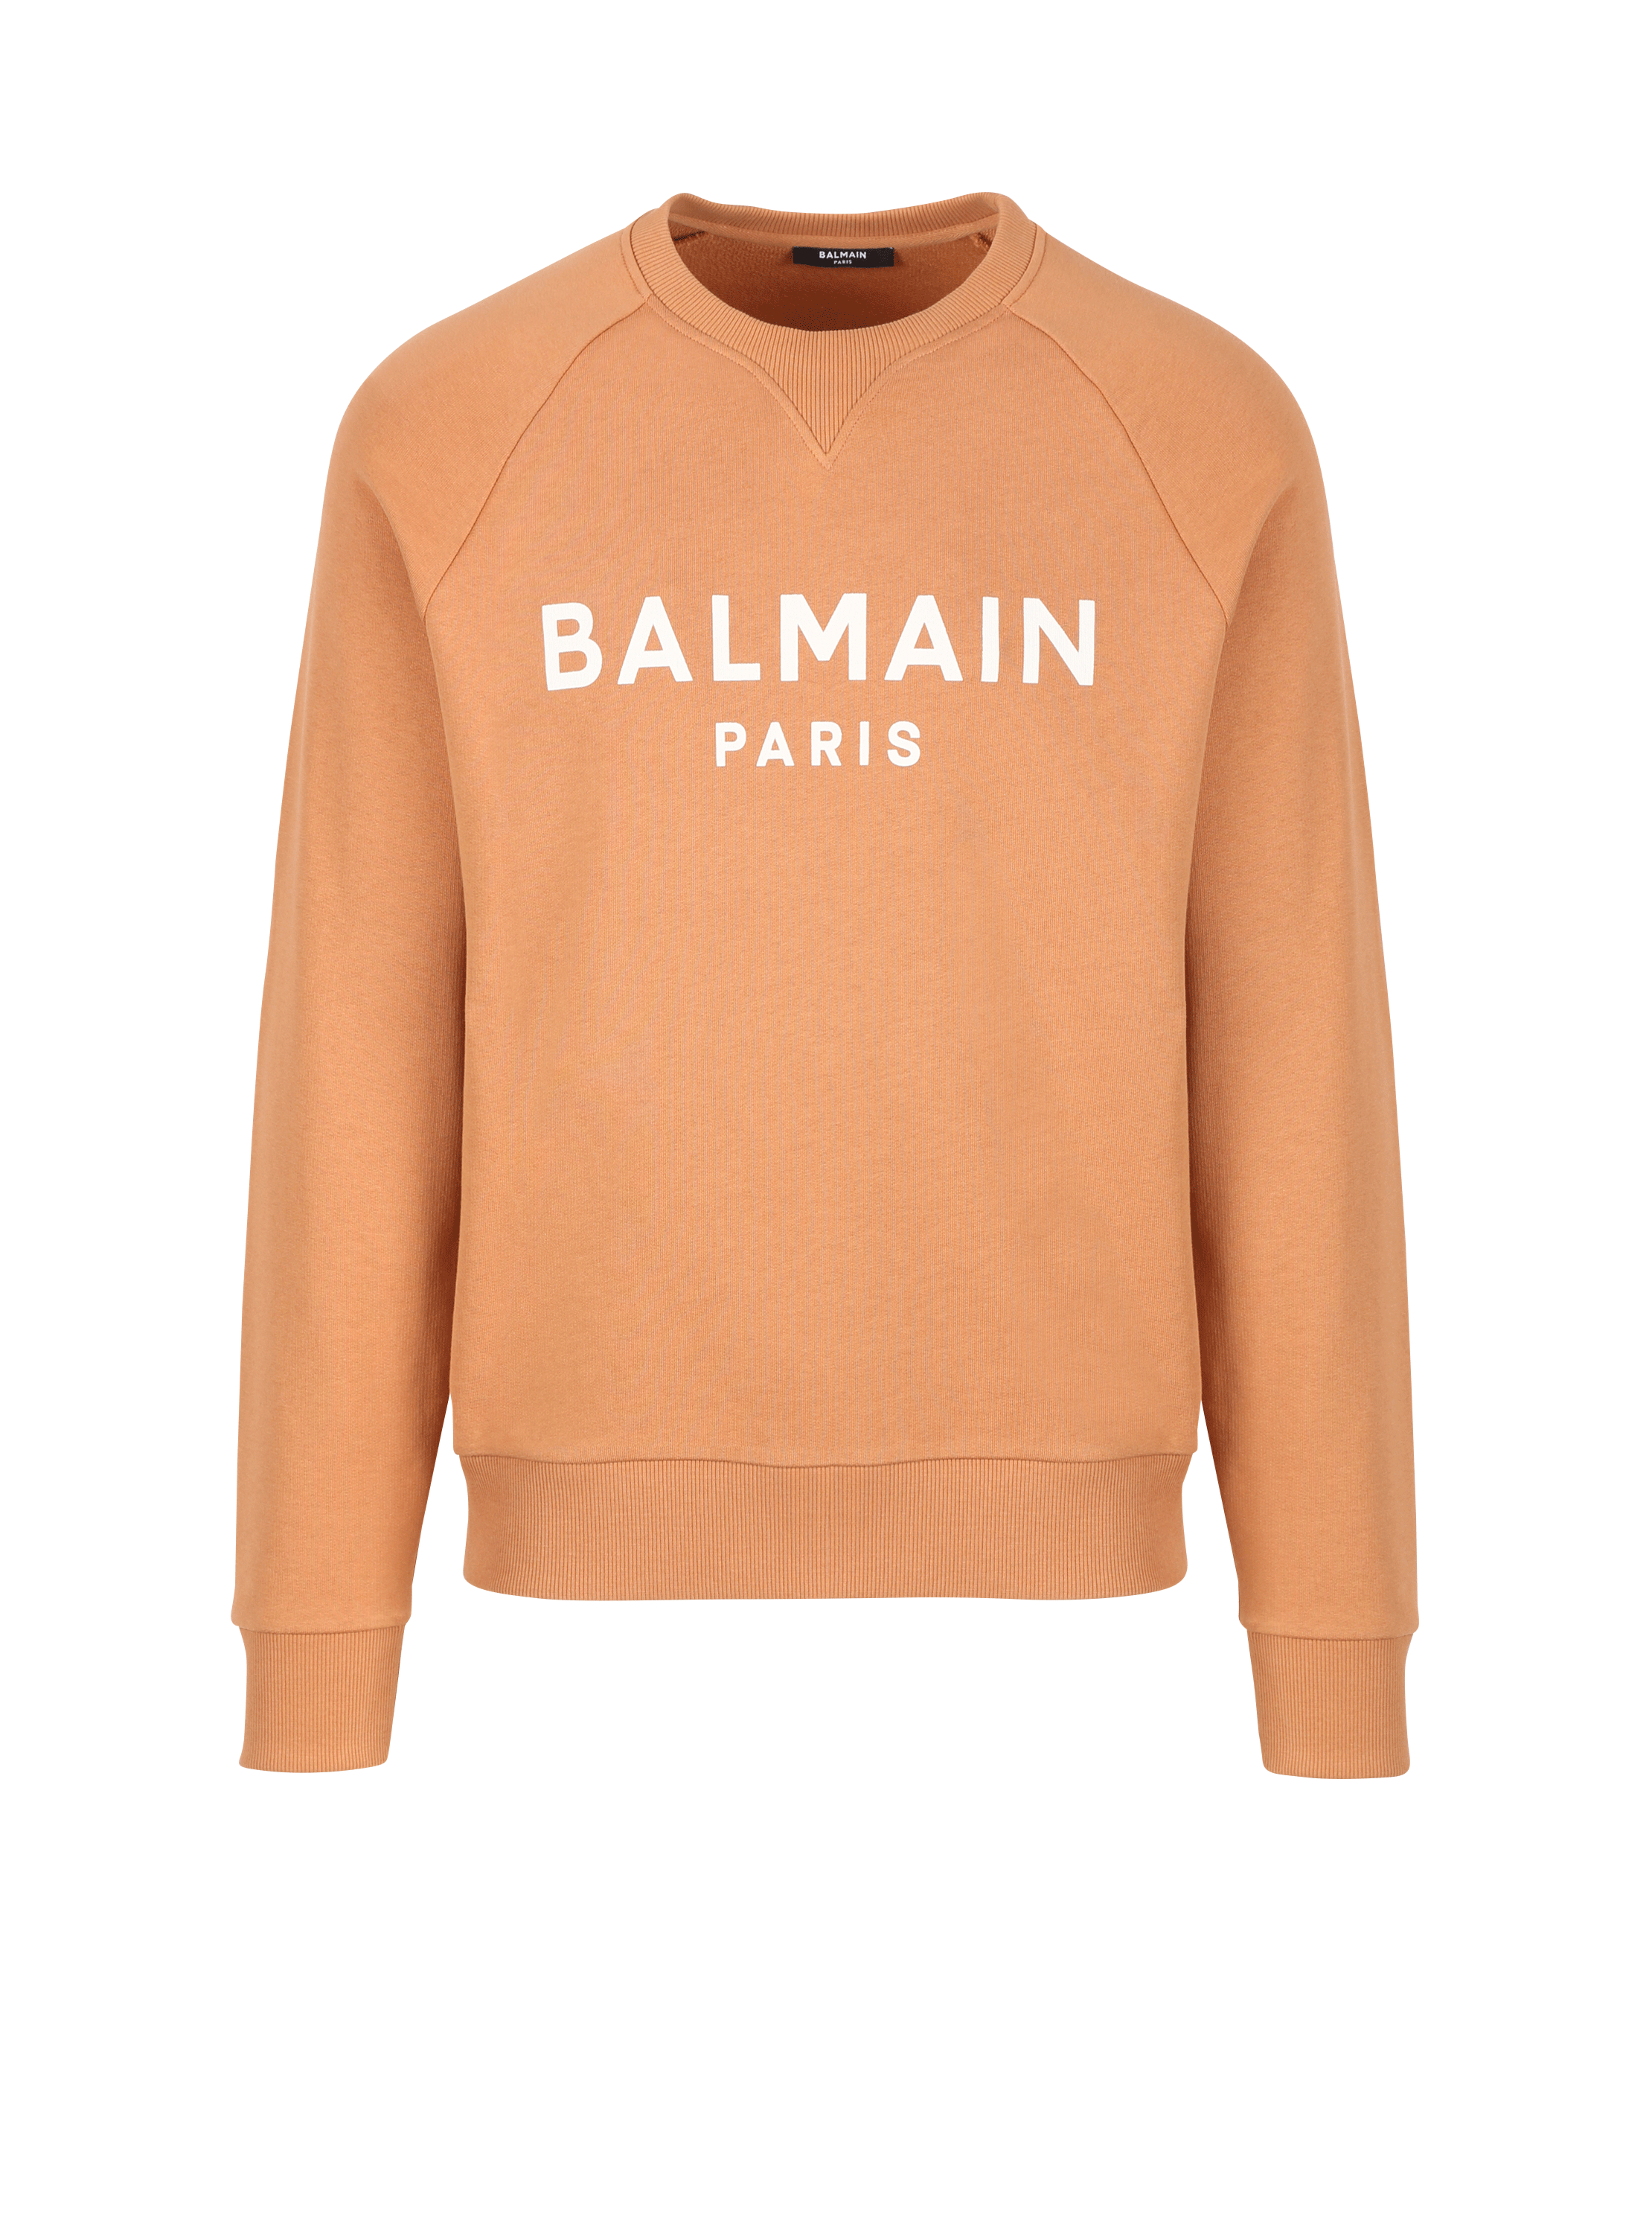 予約販売 新品未使用 Balmain Parisロゴプリント スウェットシャツ XS